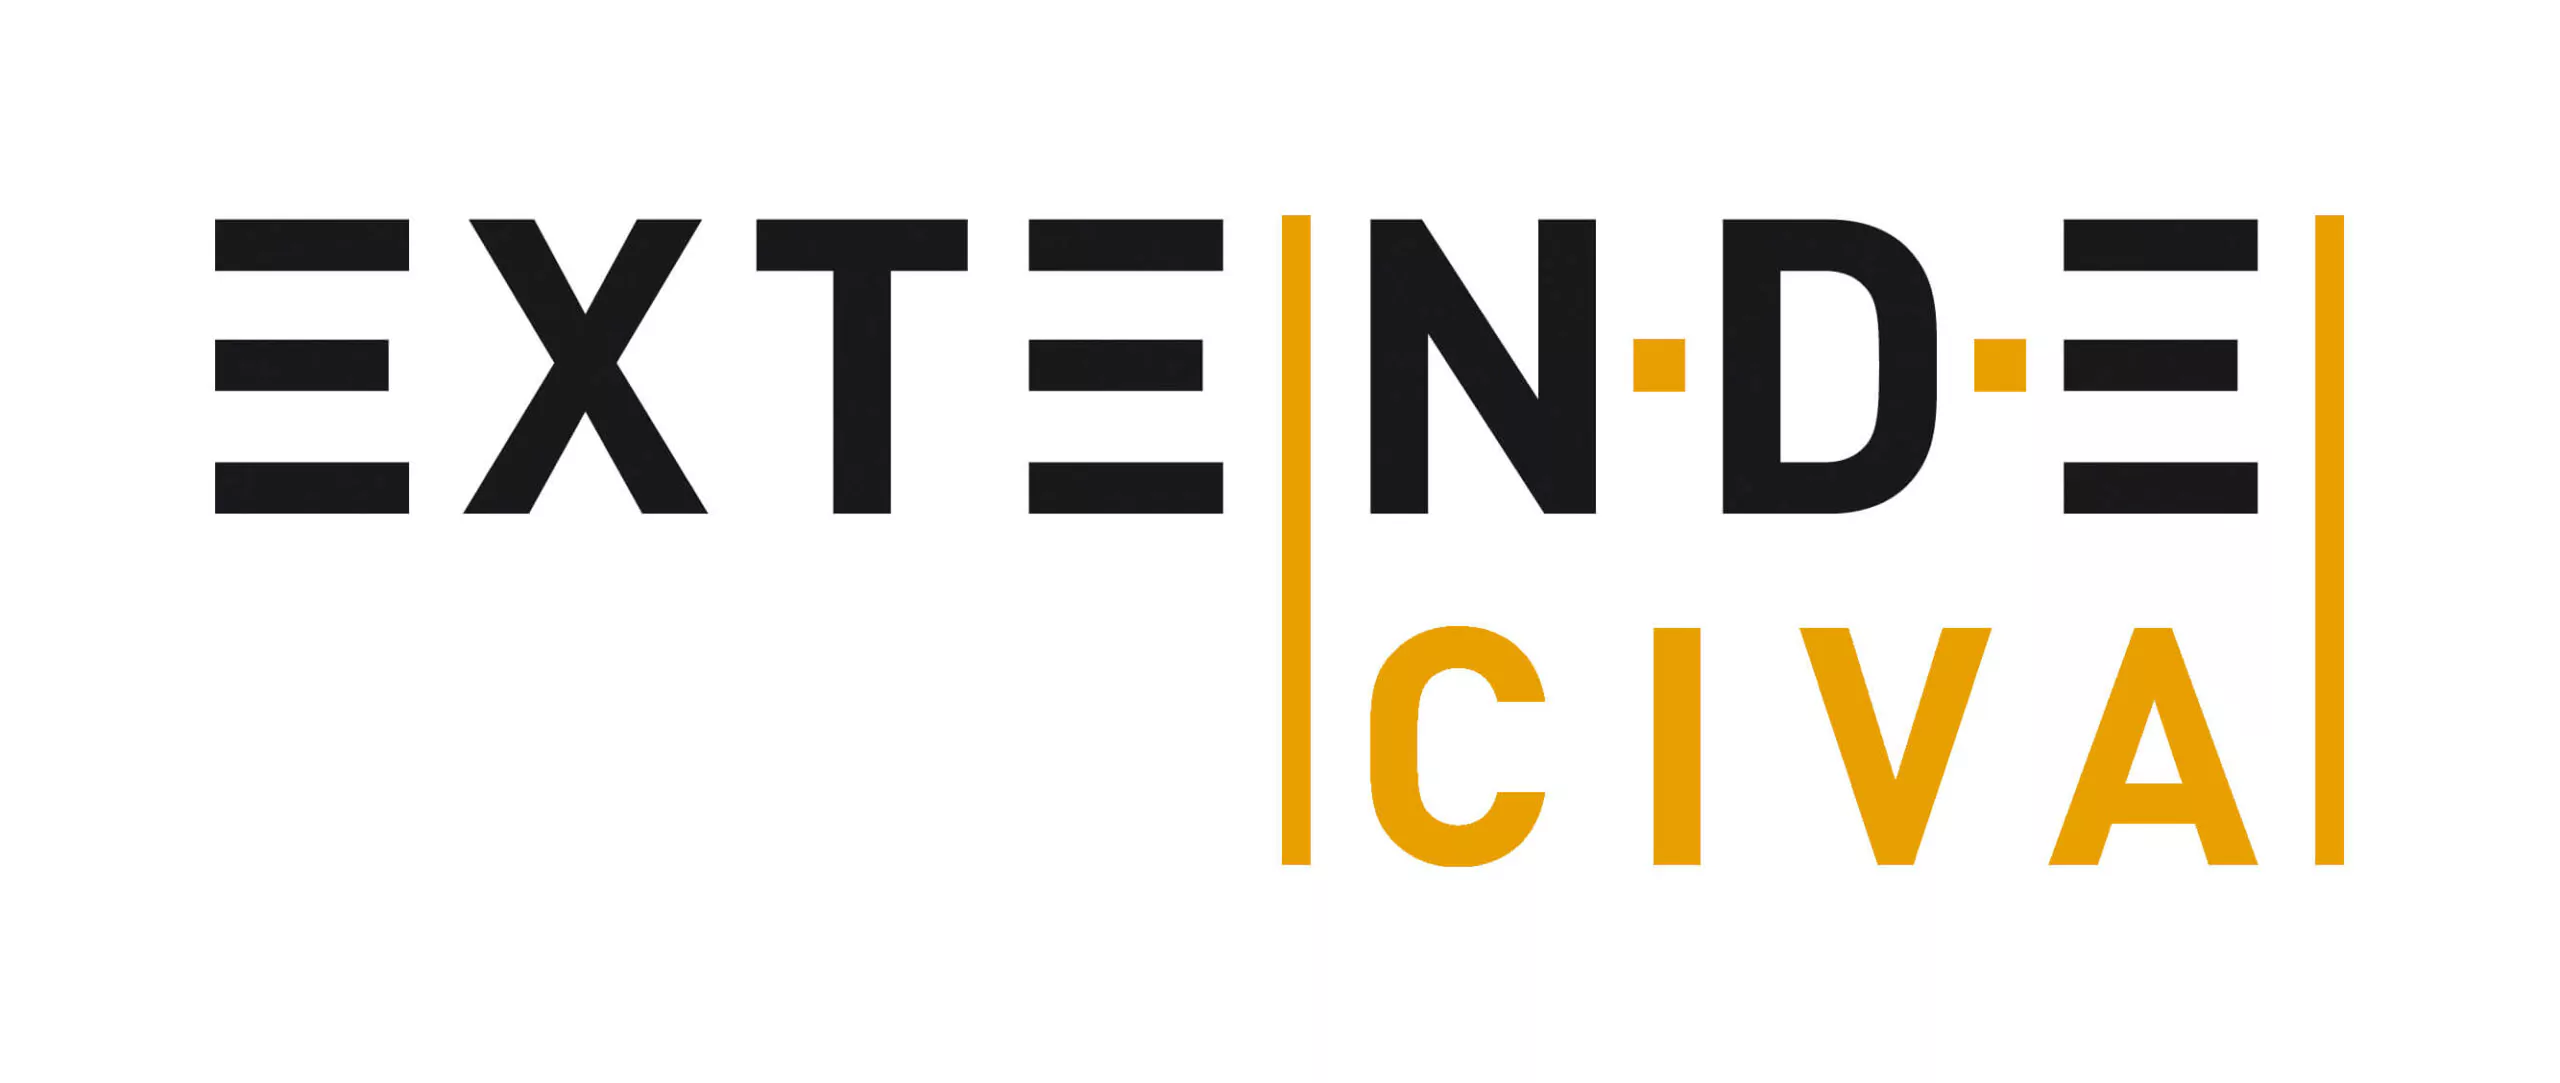 Extende Civa Thermographie logo